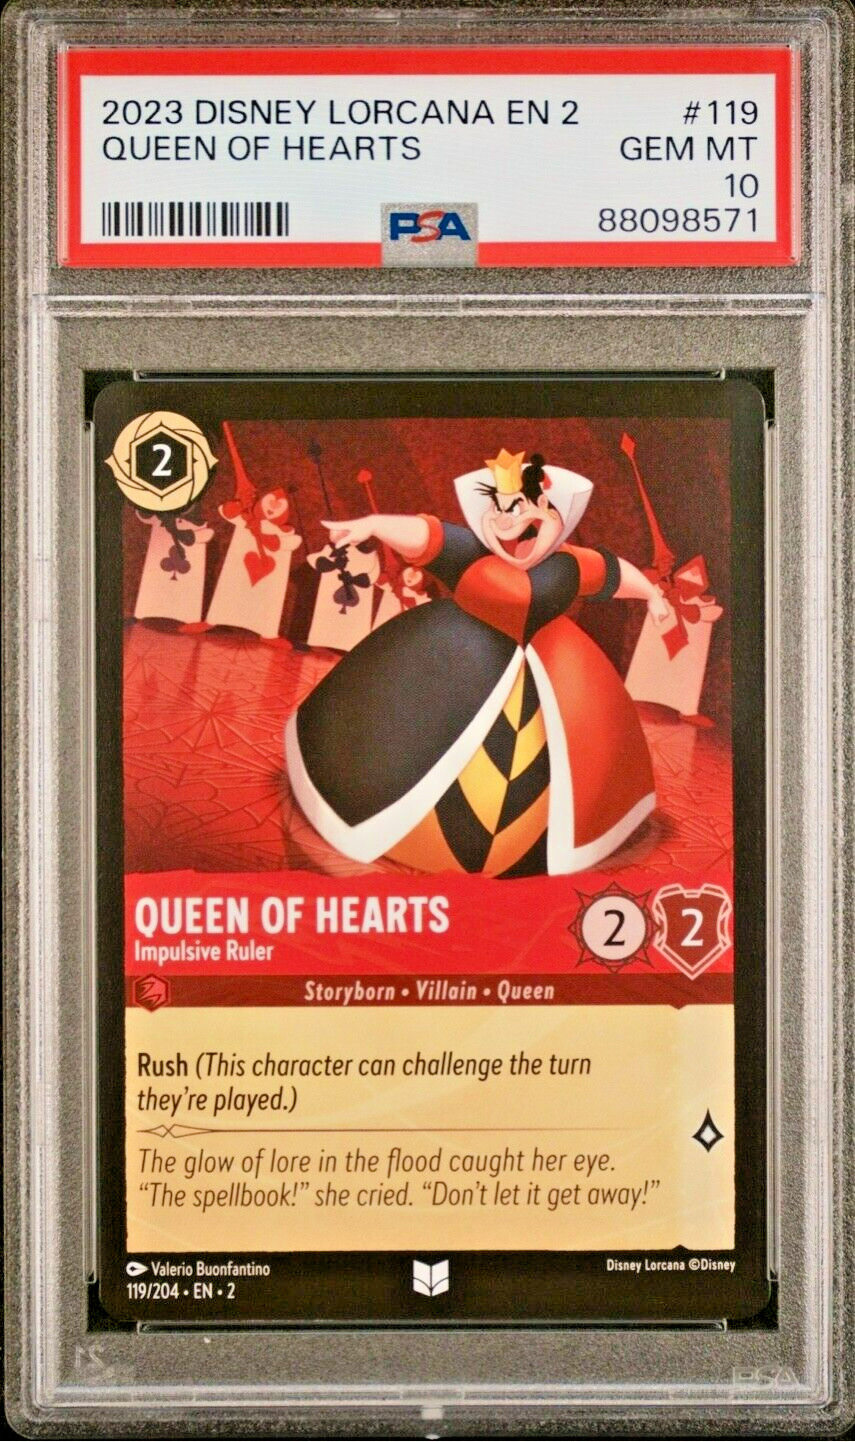 2023 Disney Lorcana EN 2 #119 Queen of Hearts Impulsive Ruler PSA 10 GEM-MT